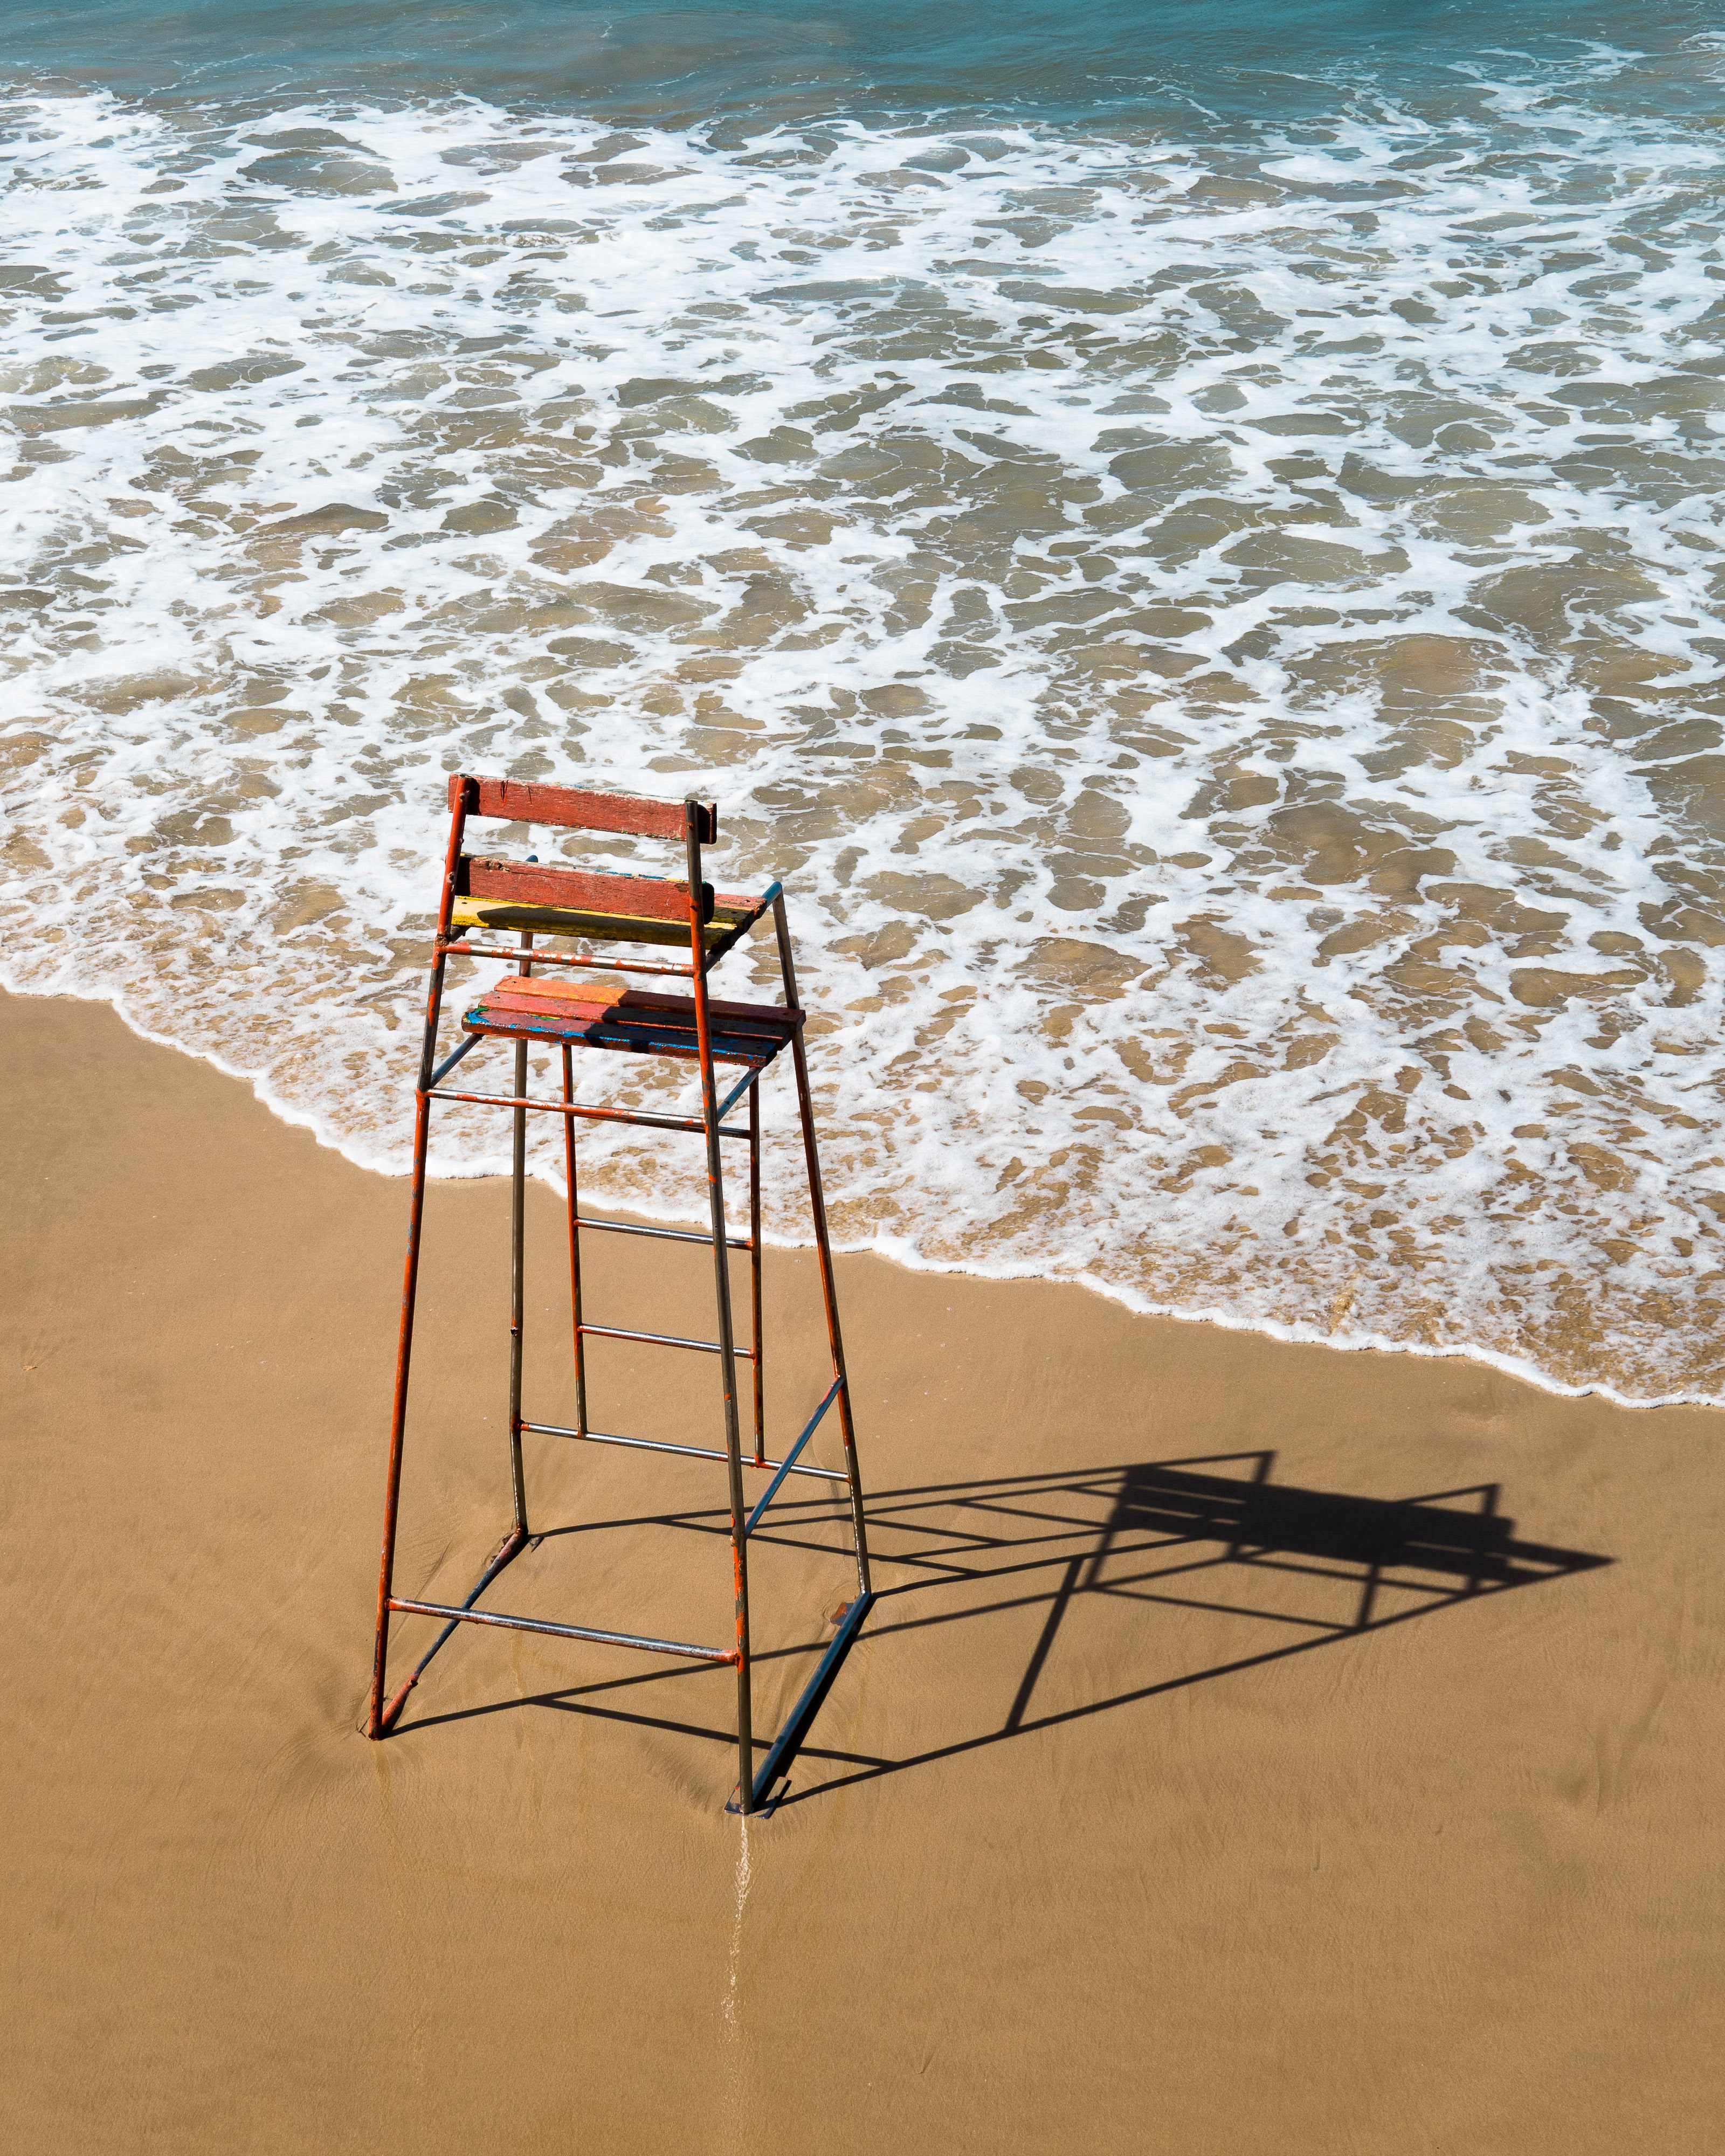 Скачать обои бесплатно Песок, Стул, Разное, Вода, Море, Пляж картинка на рабочий стол ПК